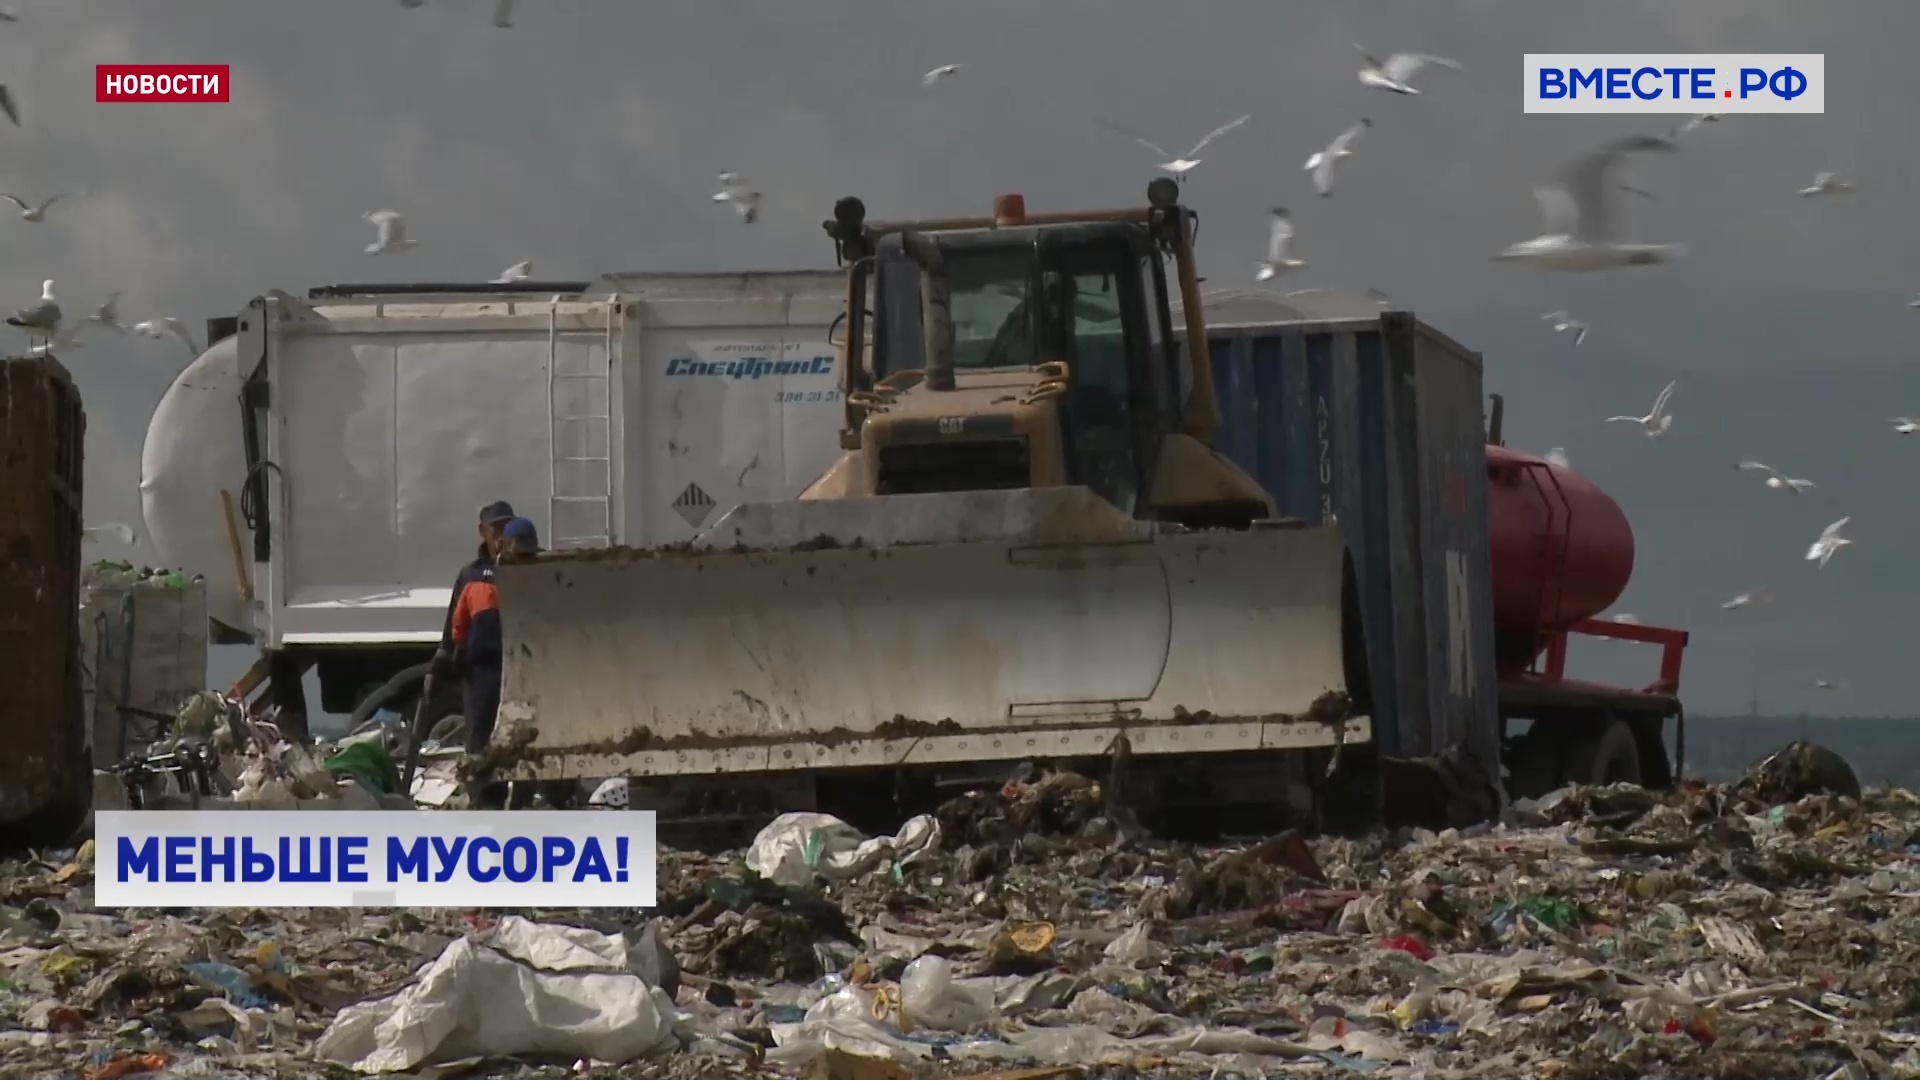 В этом году в России запланировано ликвидировать 80 крупных мусорных свалок